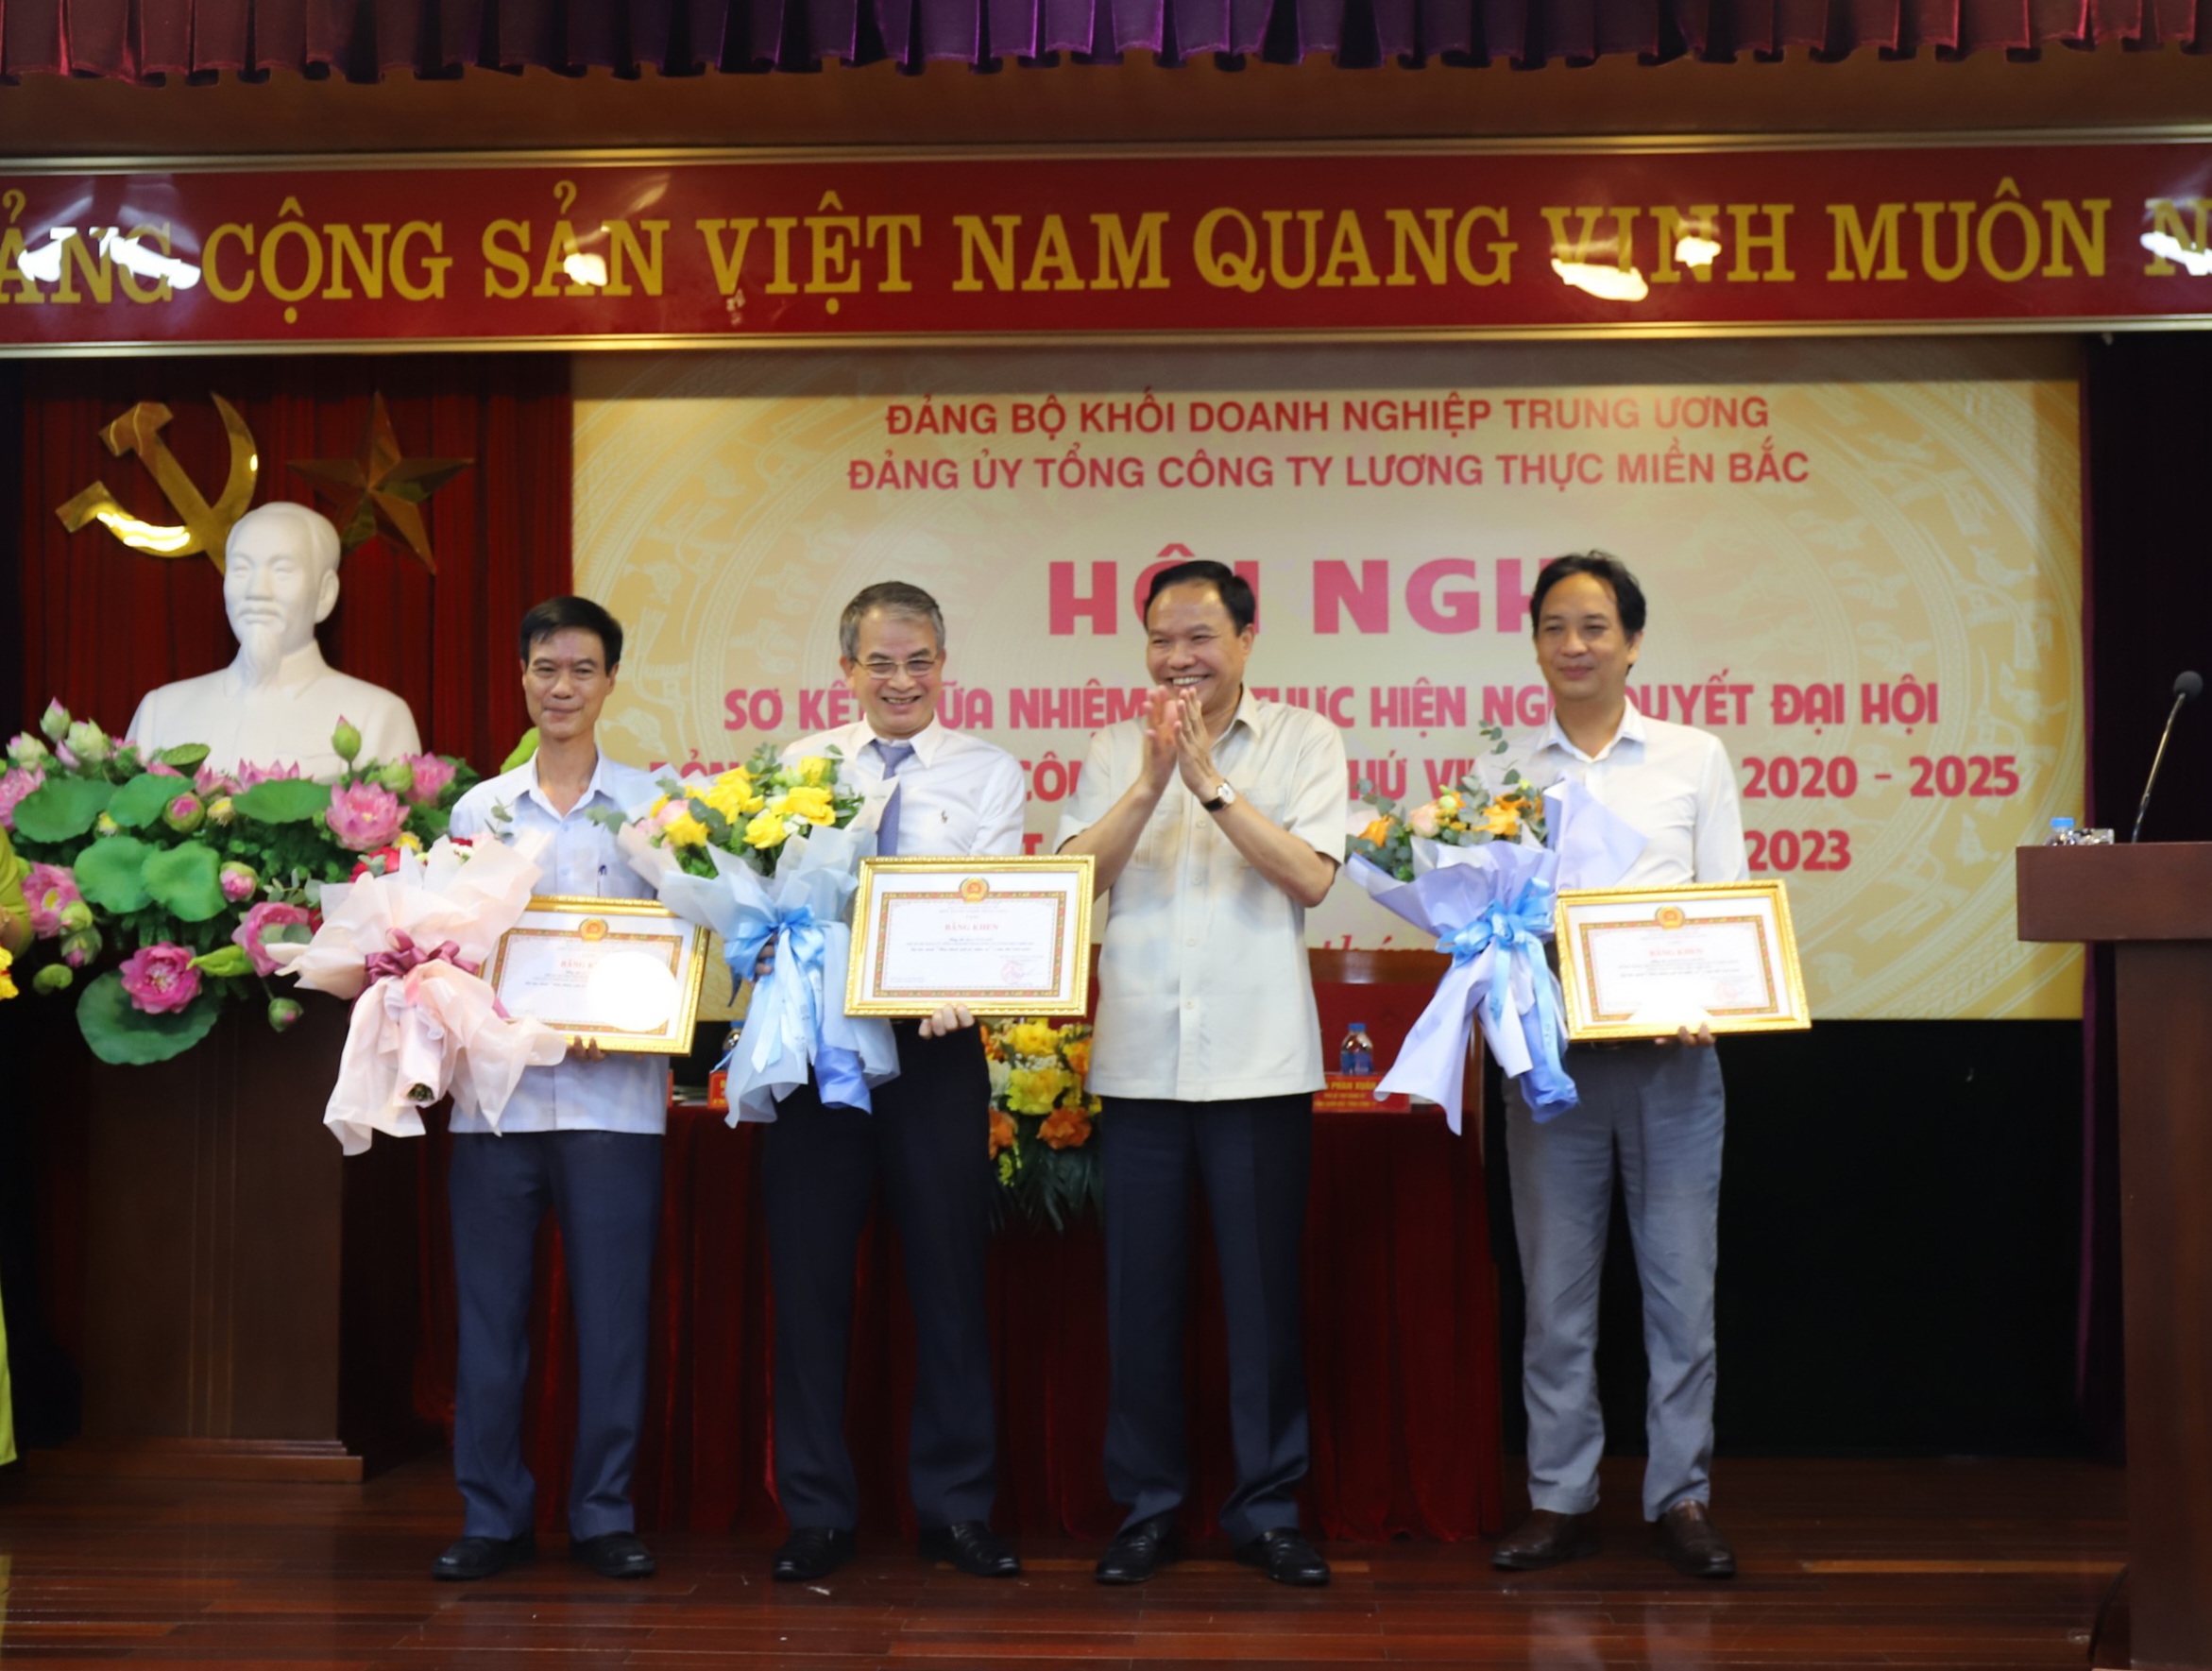 Đ/c Lê Văn Châu, Phó Bí thư Đảng ủy Khối trao tặng Bằng khen cho các đảng viên Hoàn thành xuất sắc nhiệm vụ 5 năm liền (2018-2022).